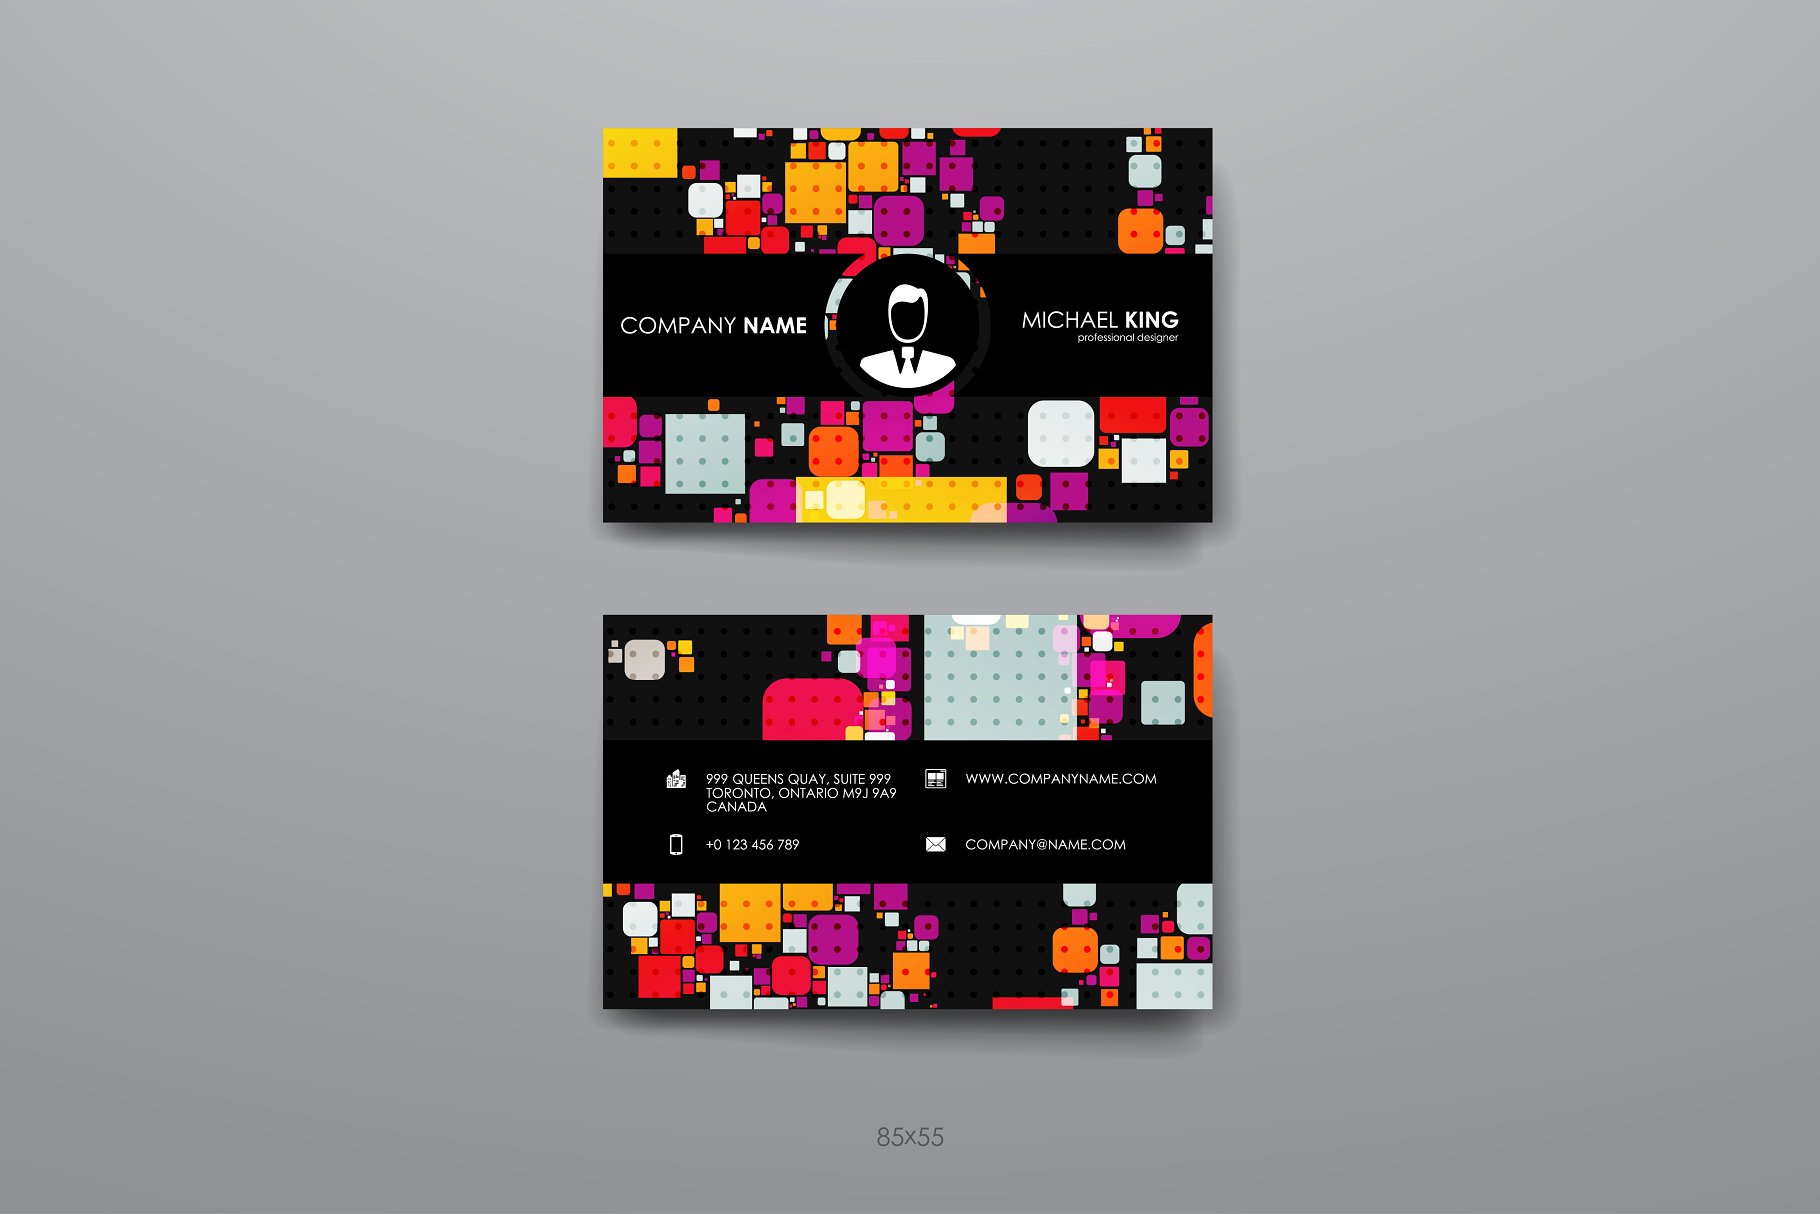 8款企业个人名片抽象设计模板 8 Business Cards插图(5)